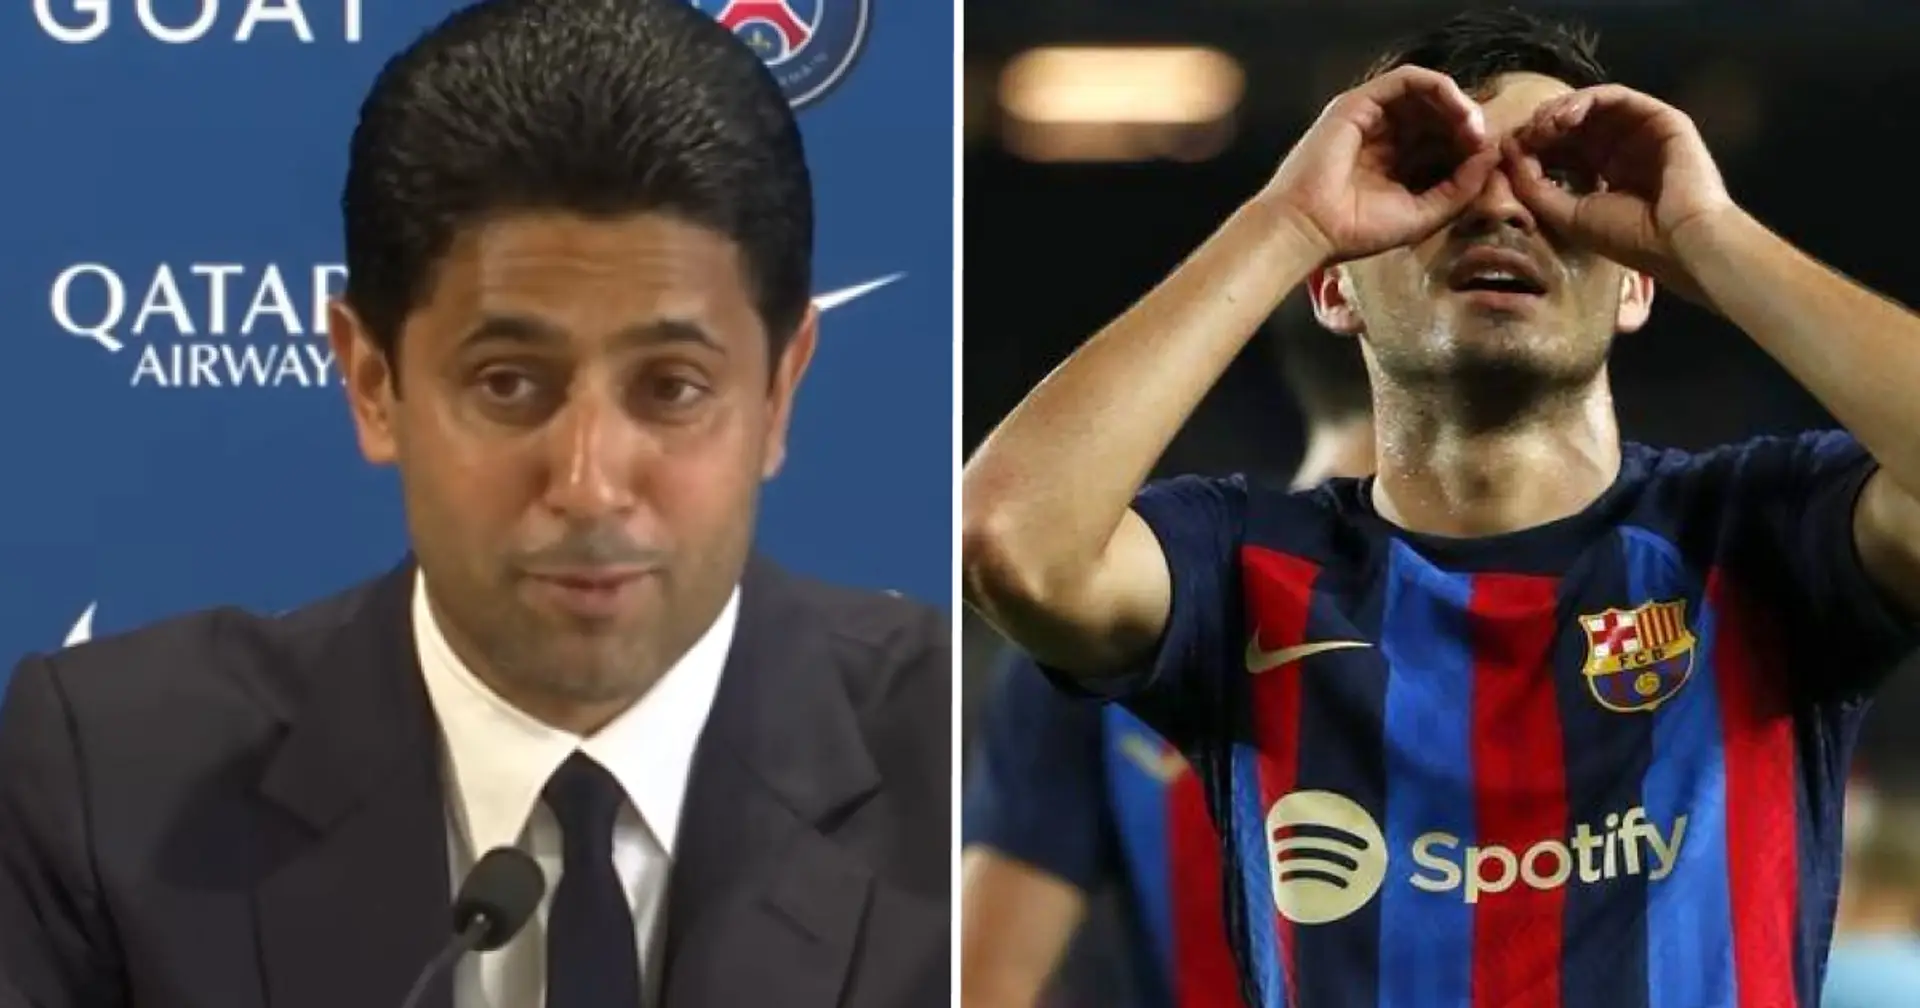 "Le monde l'a remarqué": le président du PSG nomme un joueur du Barça qu'il a tenté de recruter, pas Pedri